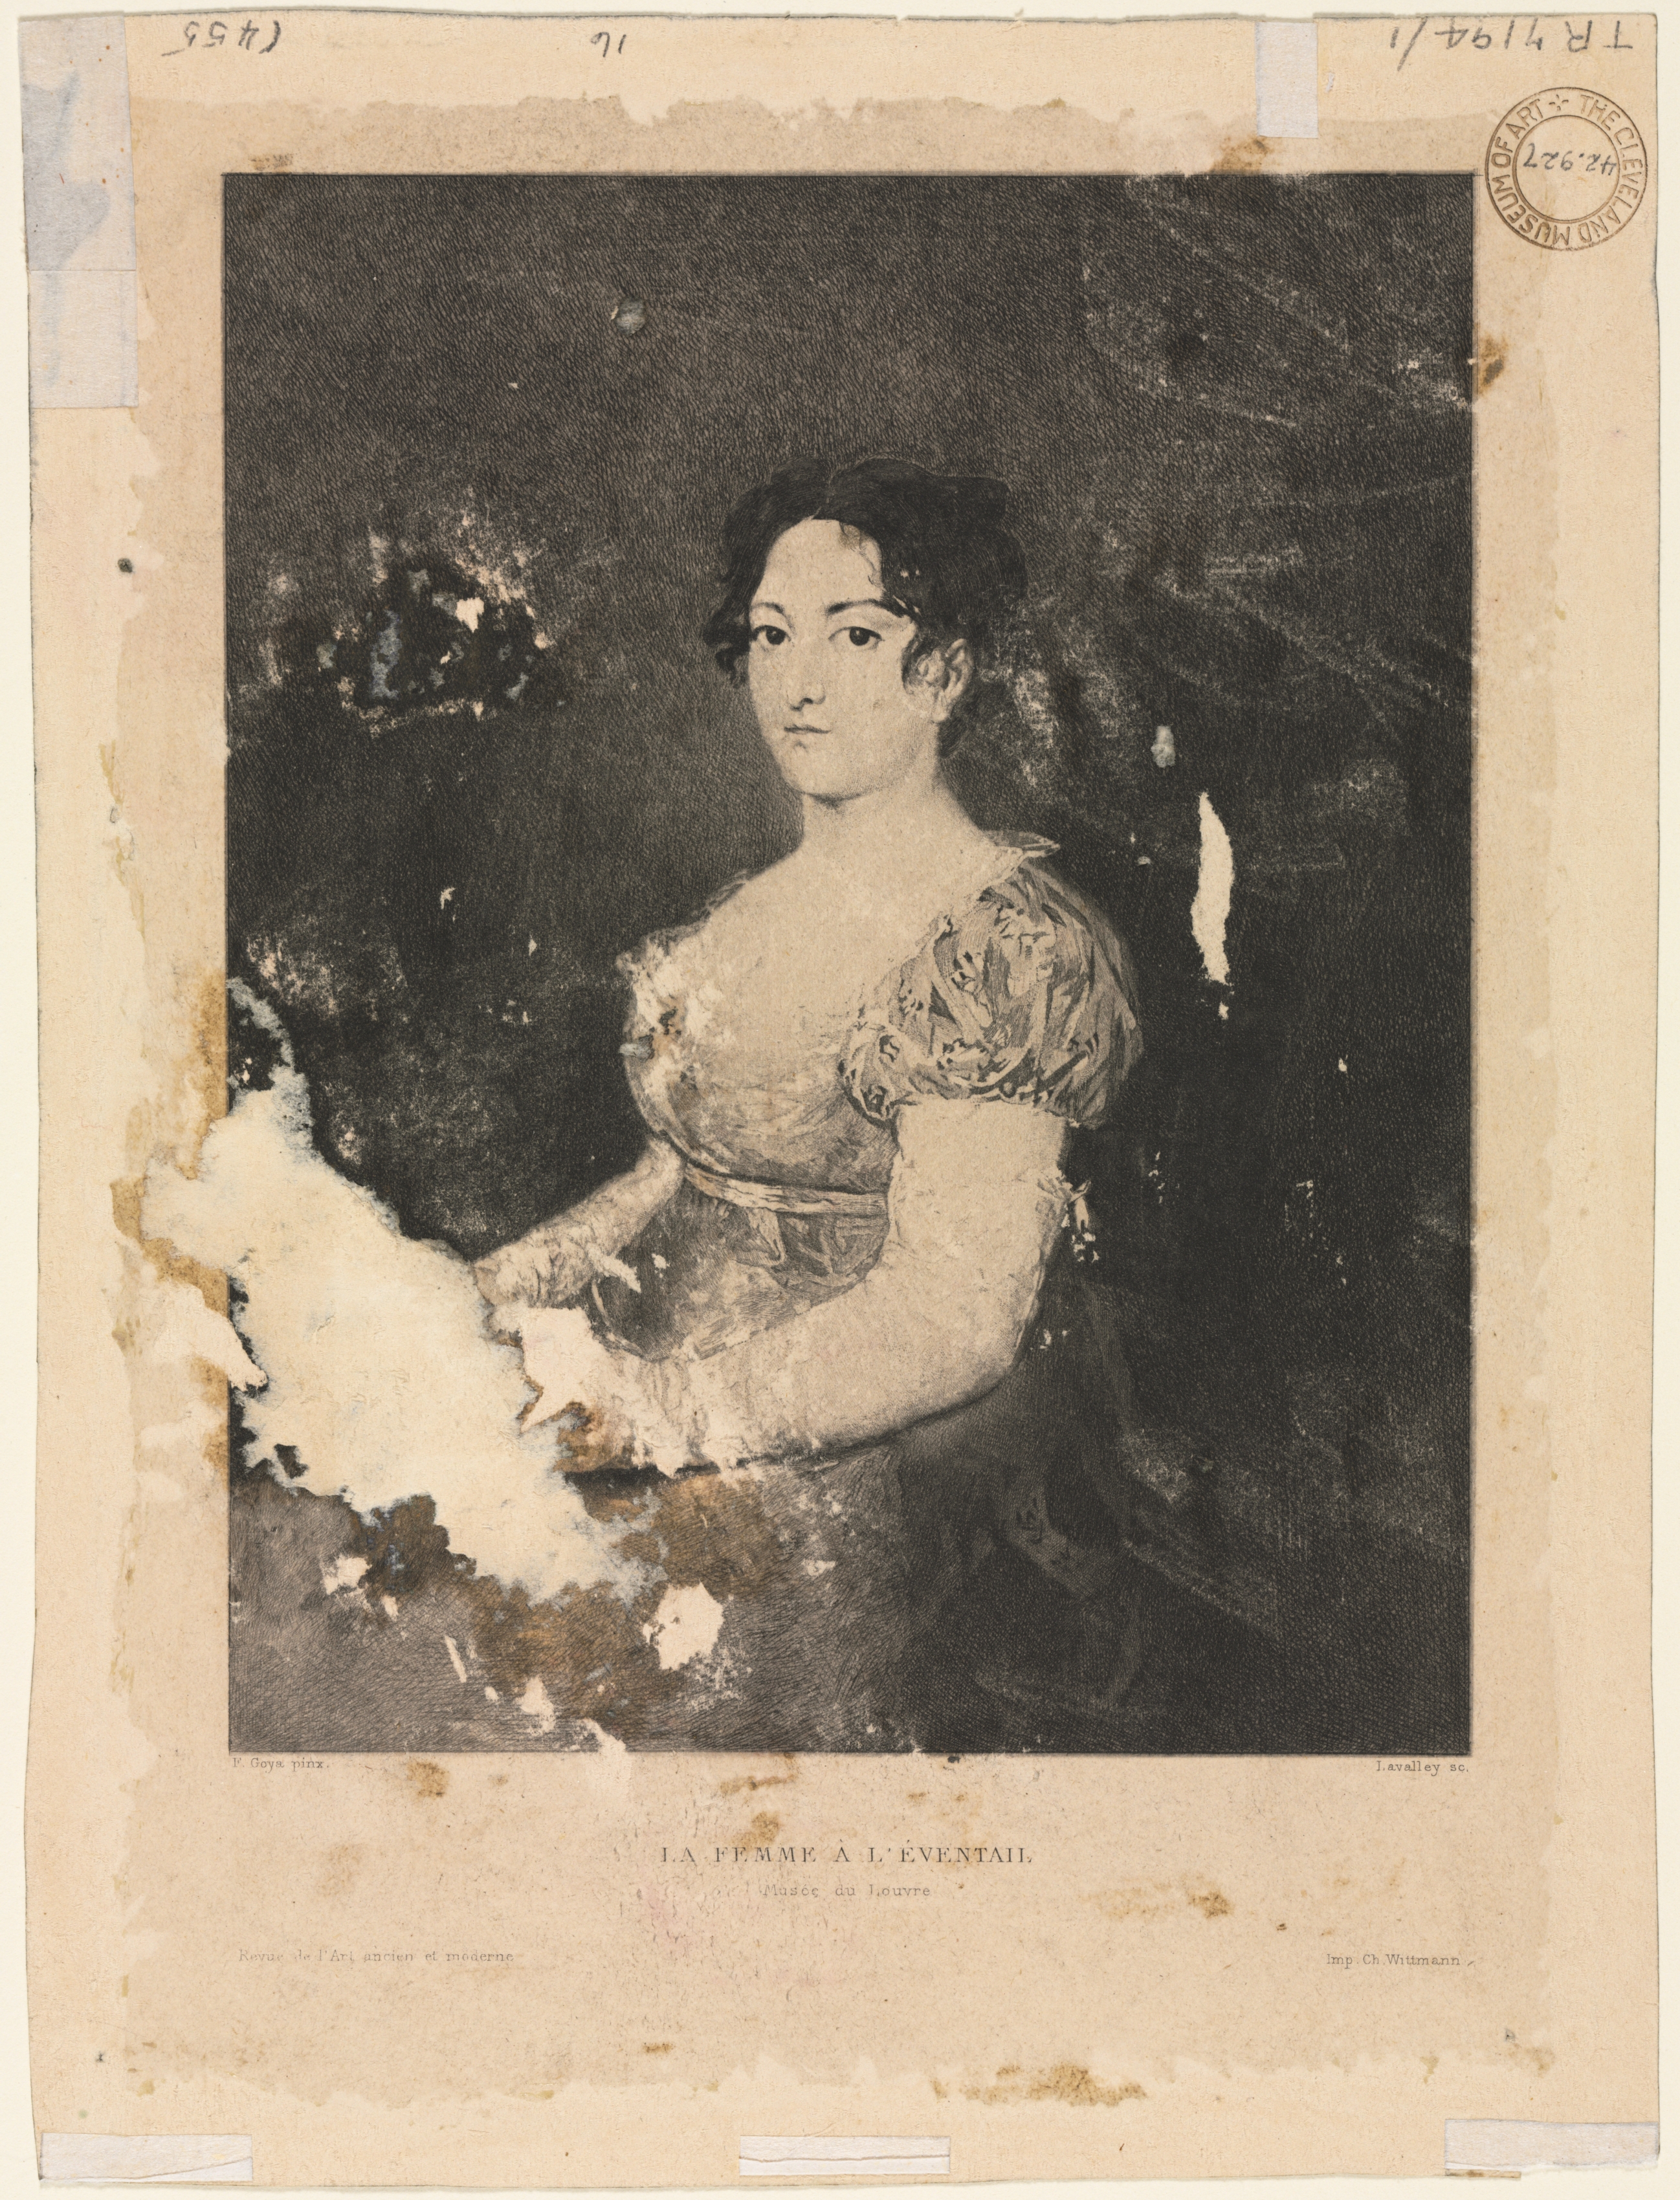 La femme à l'éventail, after Goya (verso)